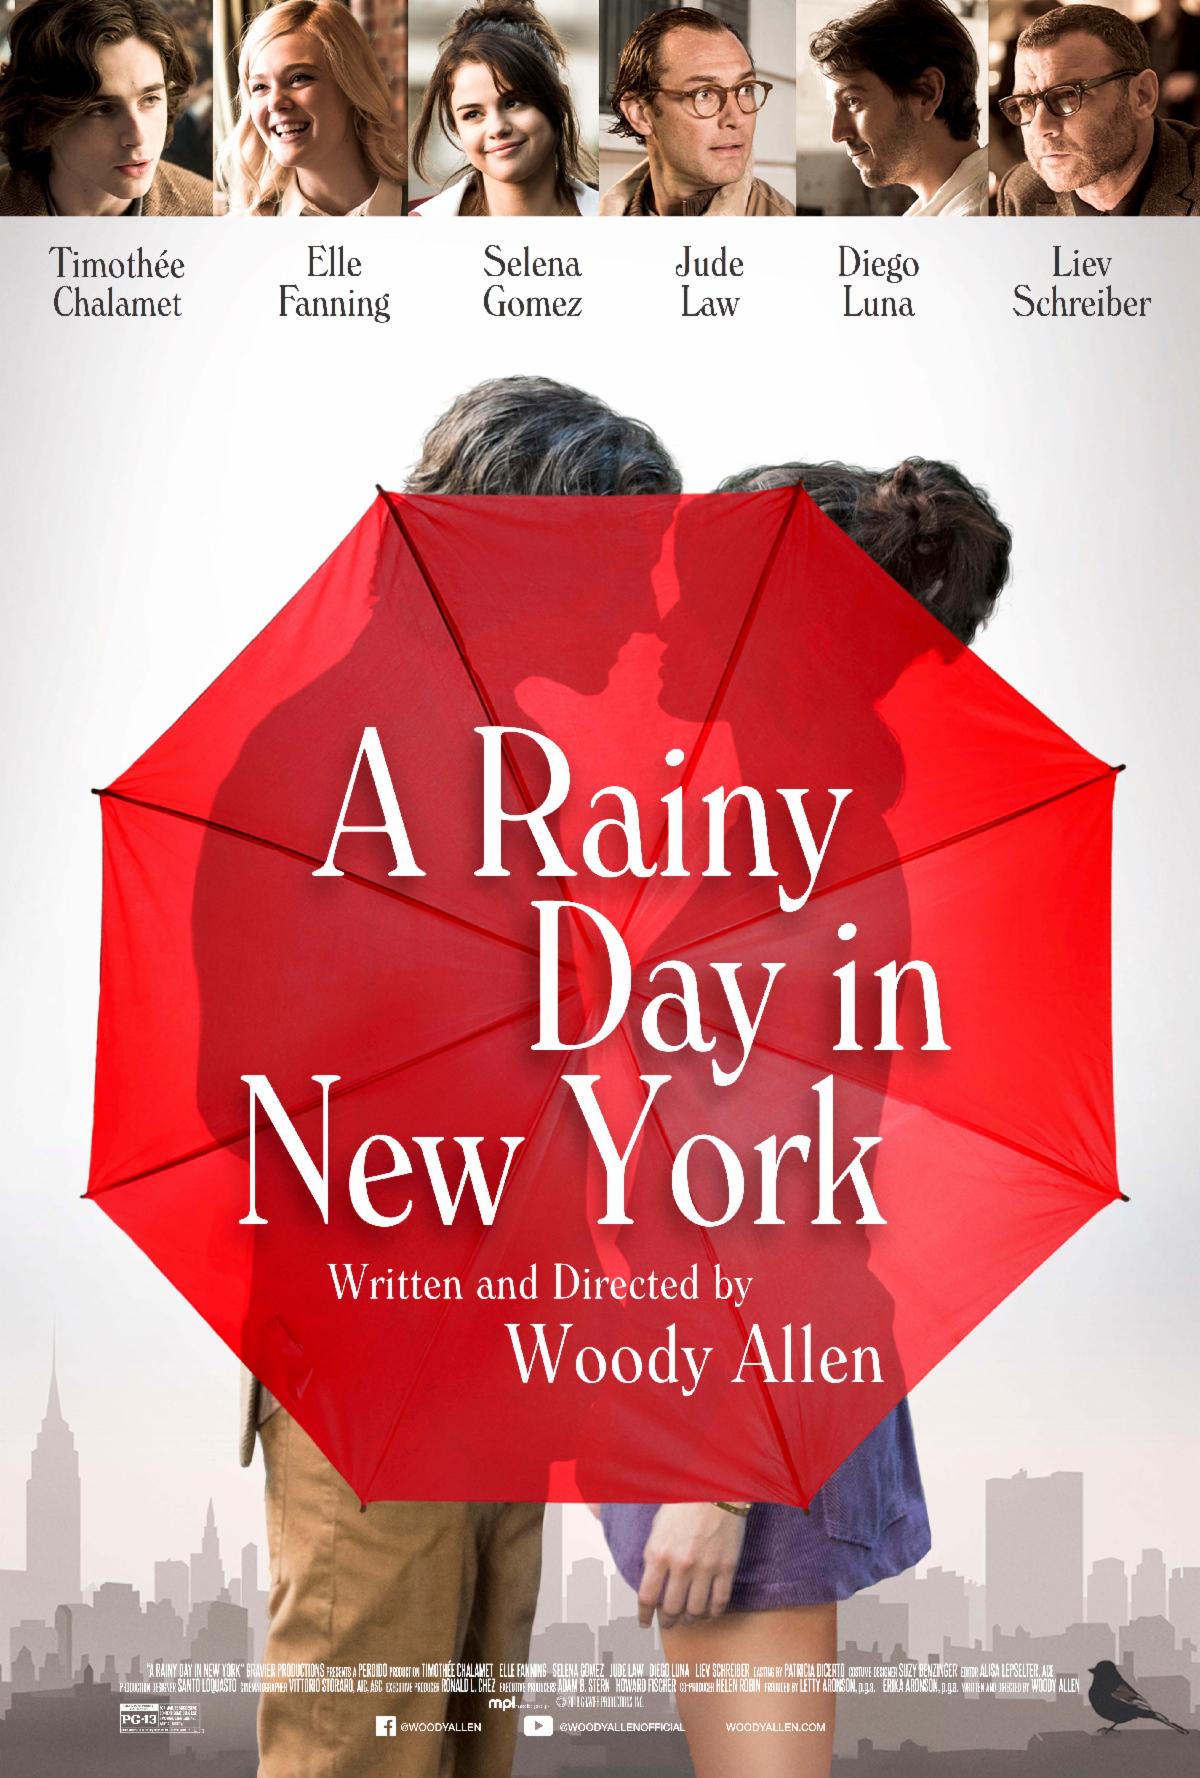 یک روز بارانی در نیویورک (A Rainy Day in New York)